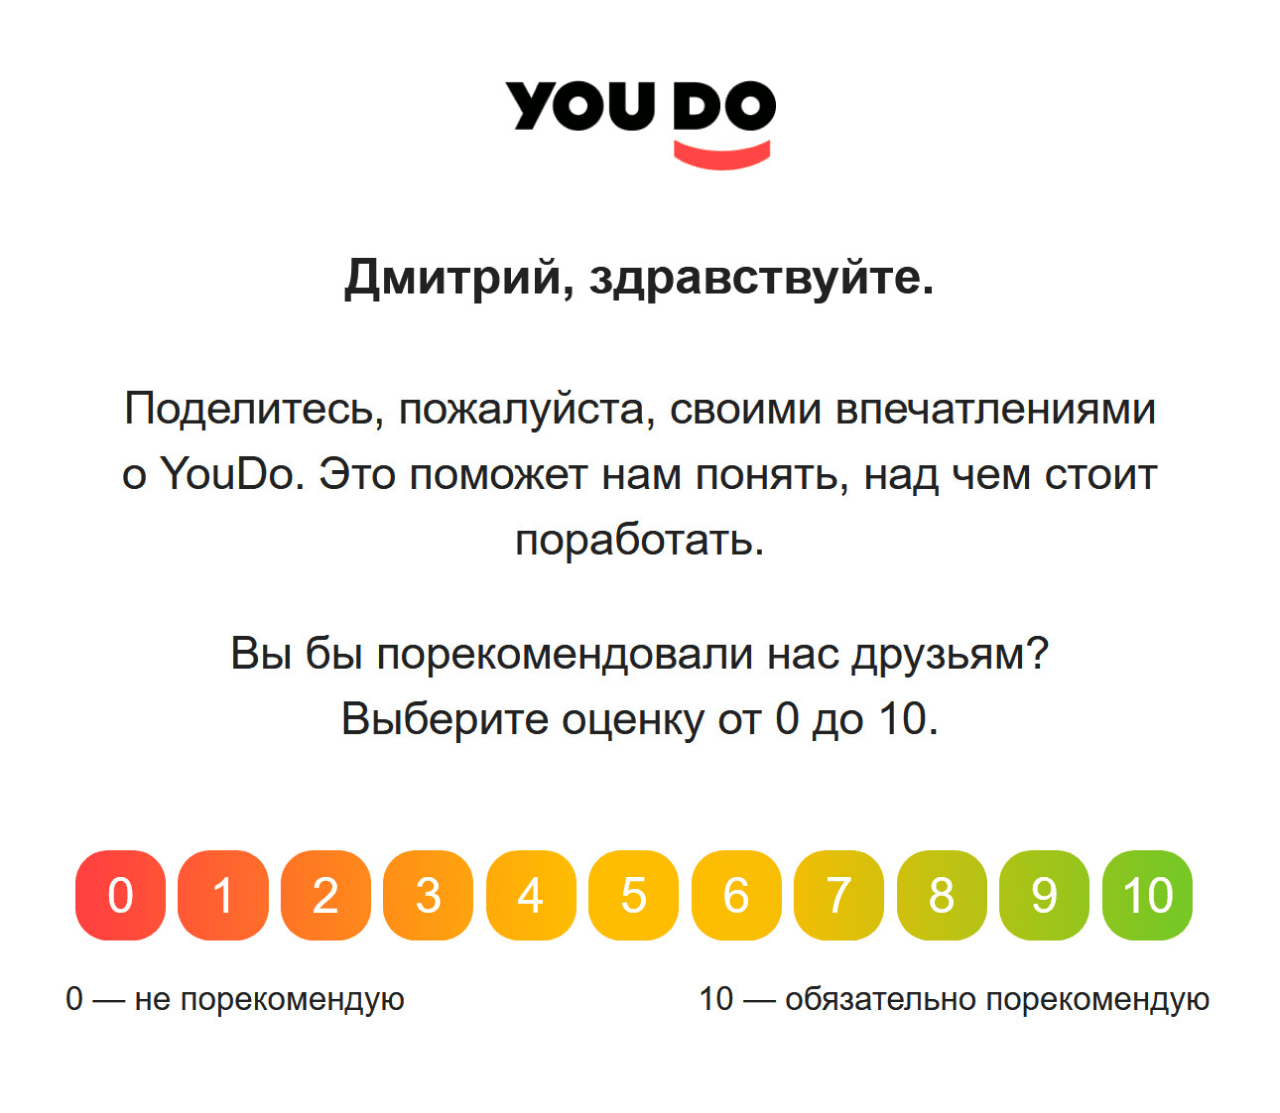 В кнопки с оценкой сервиса YouDo.com зашита ссылка на небольшую анкету